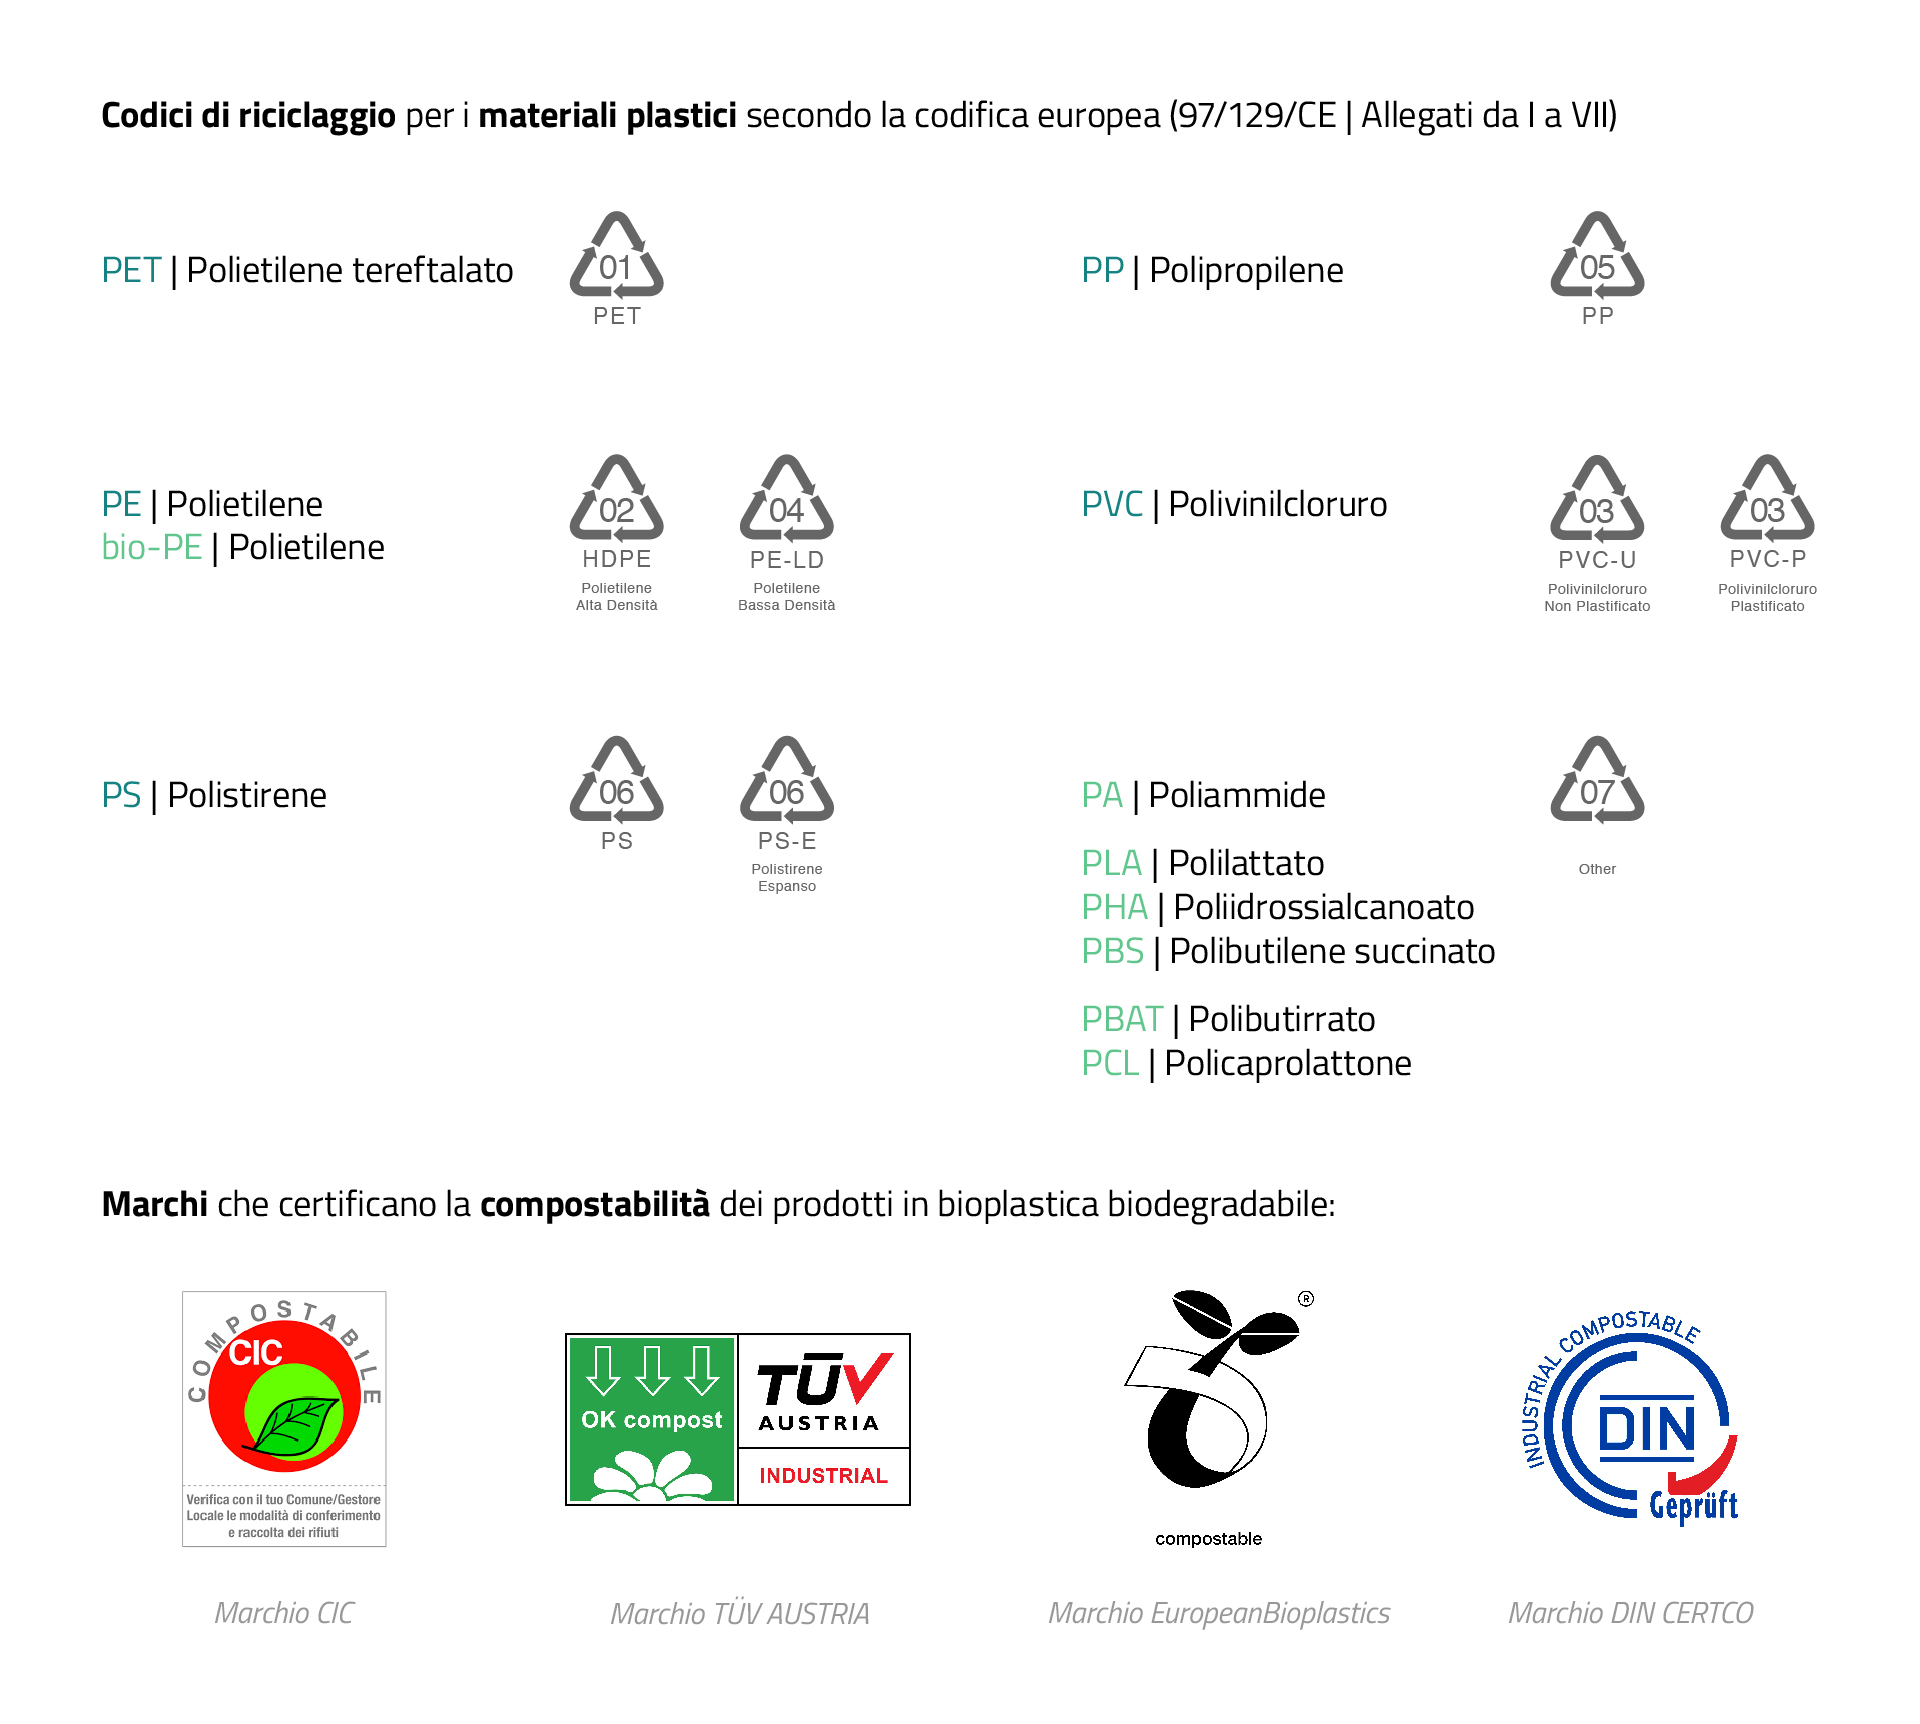 Codici di riciclaggio e marchi di certificazione compostabilità